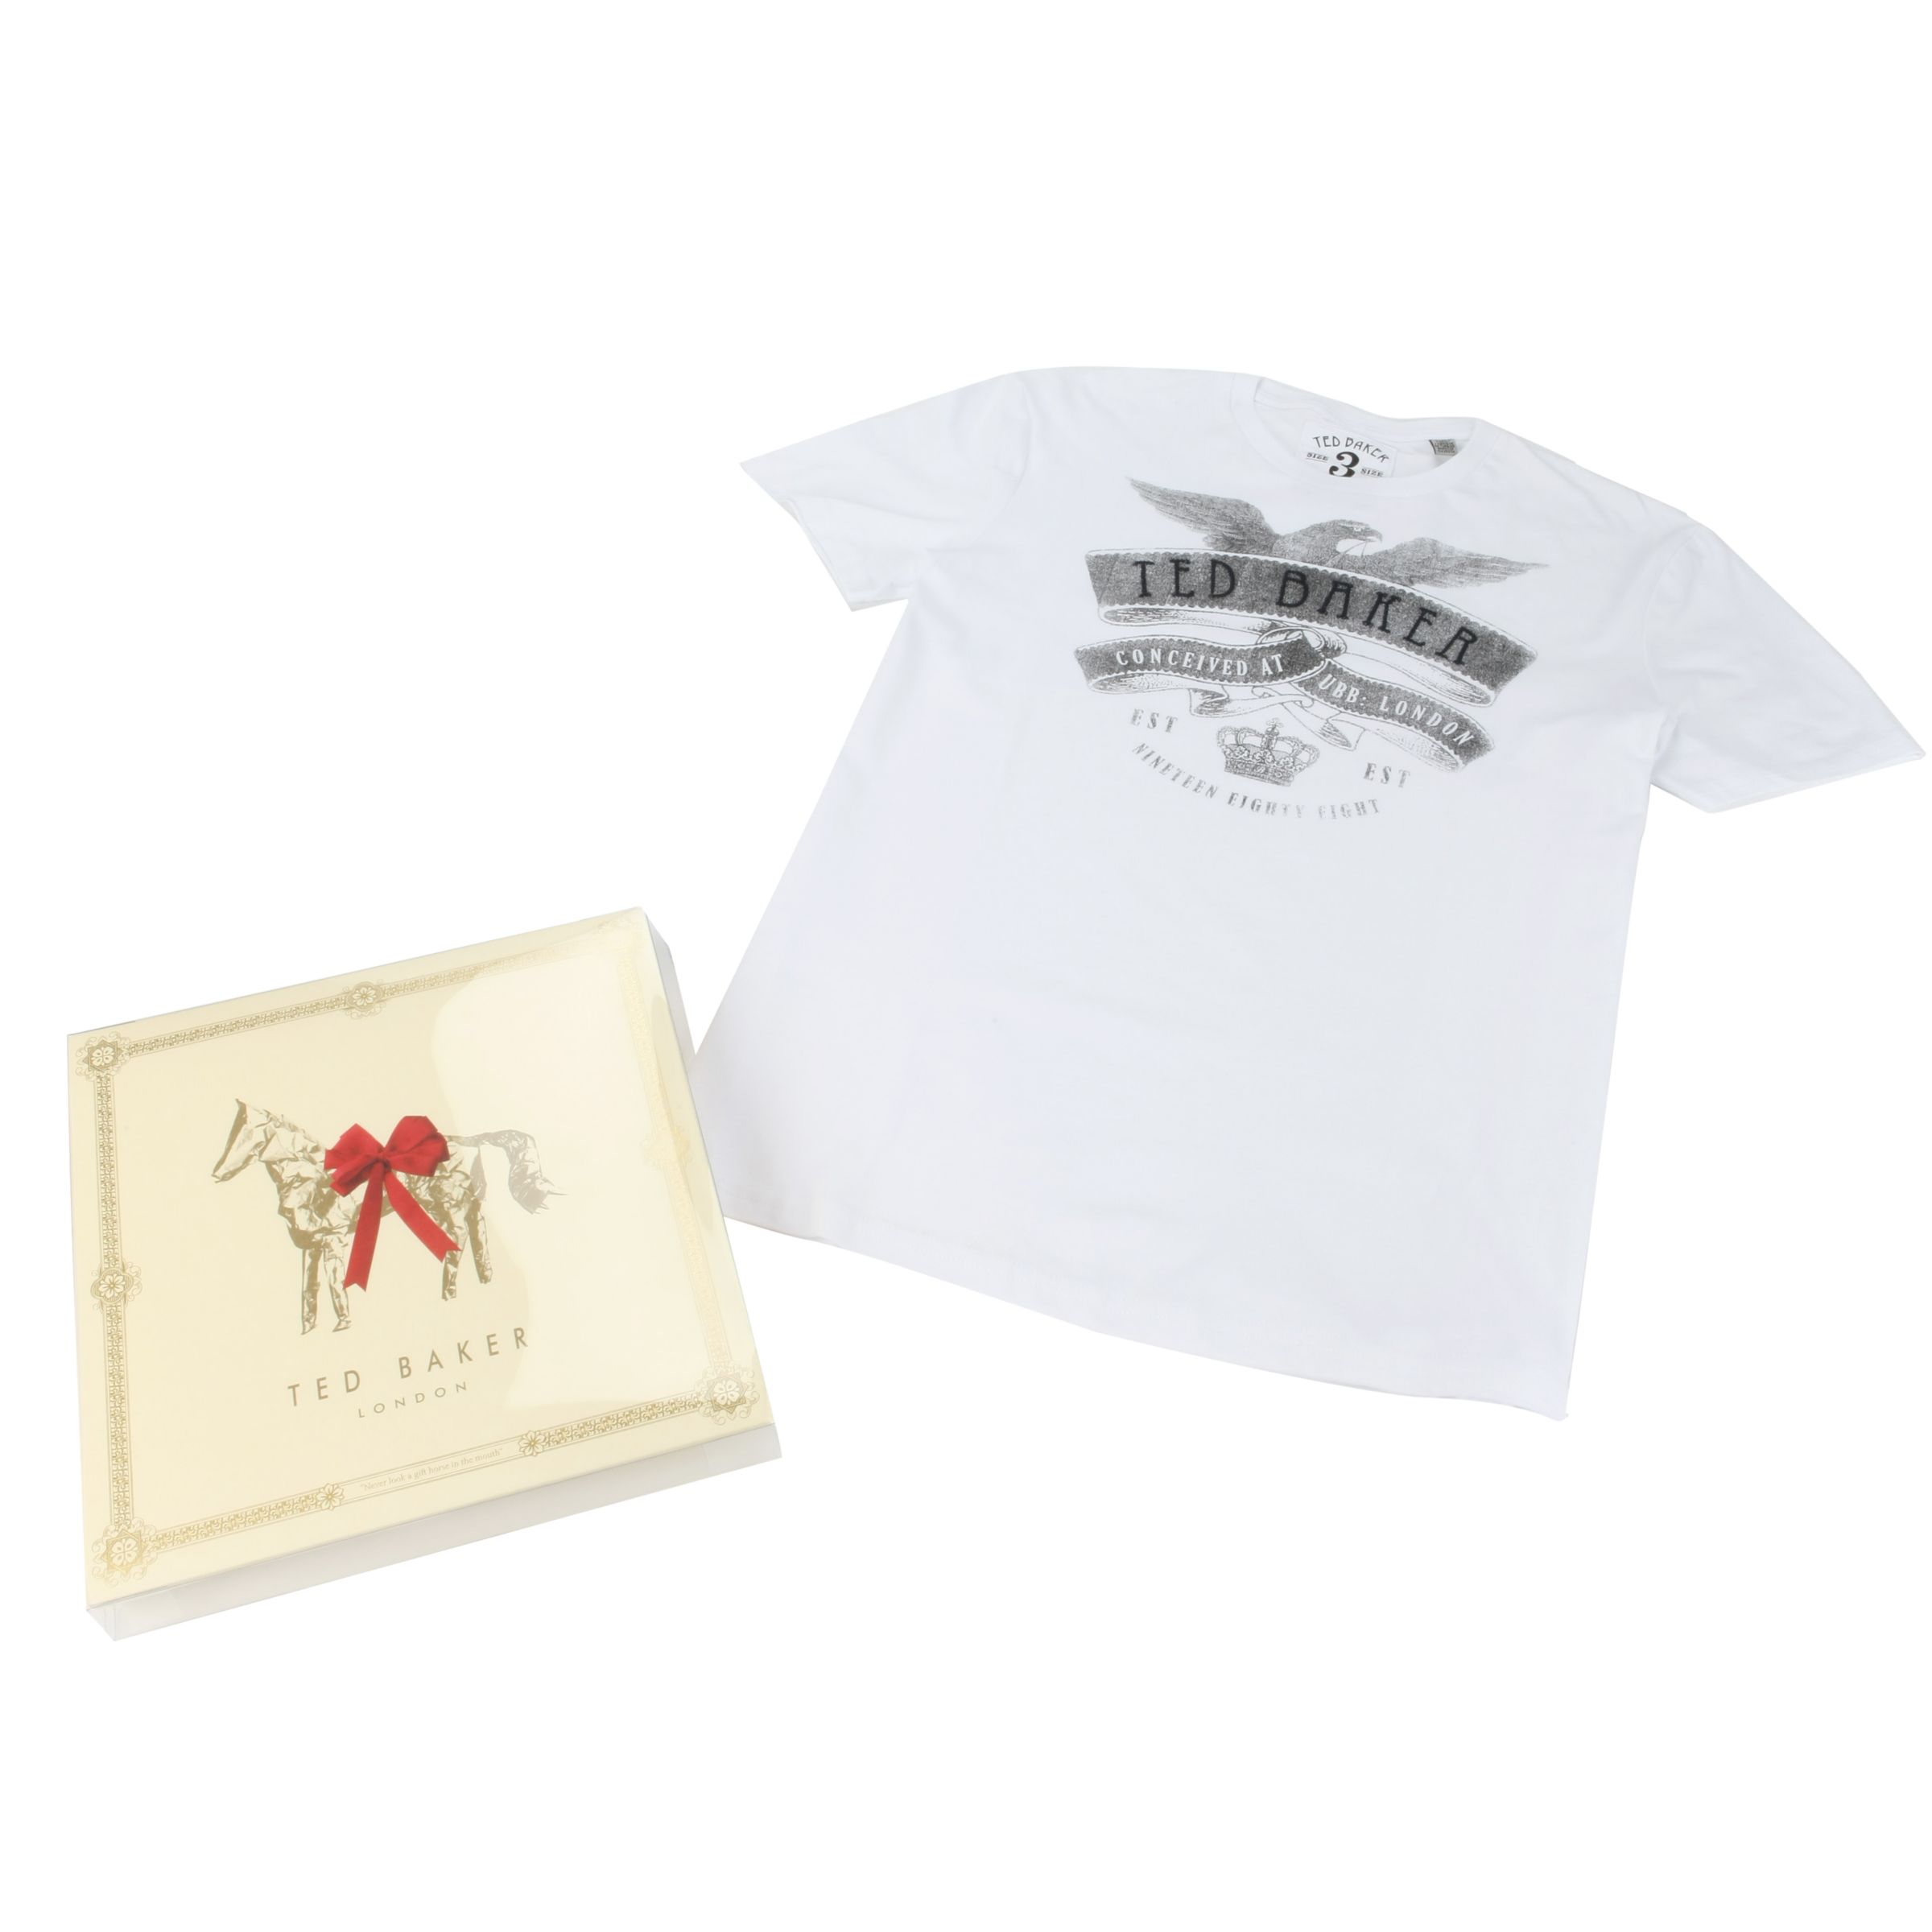 Ted Baker T-Shirt Gift Set, White